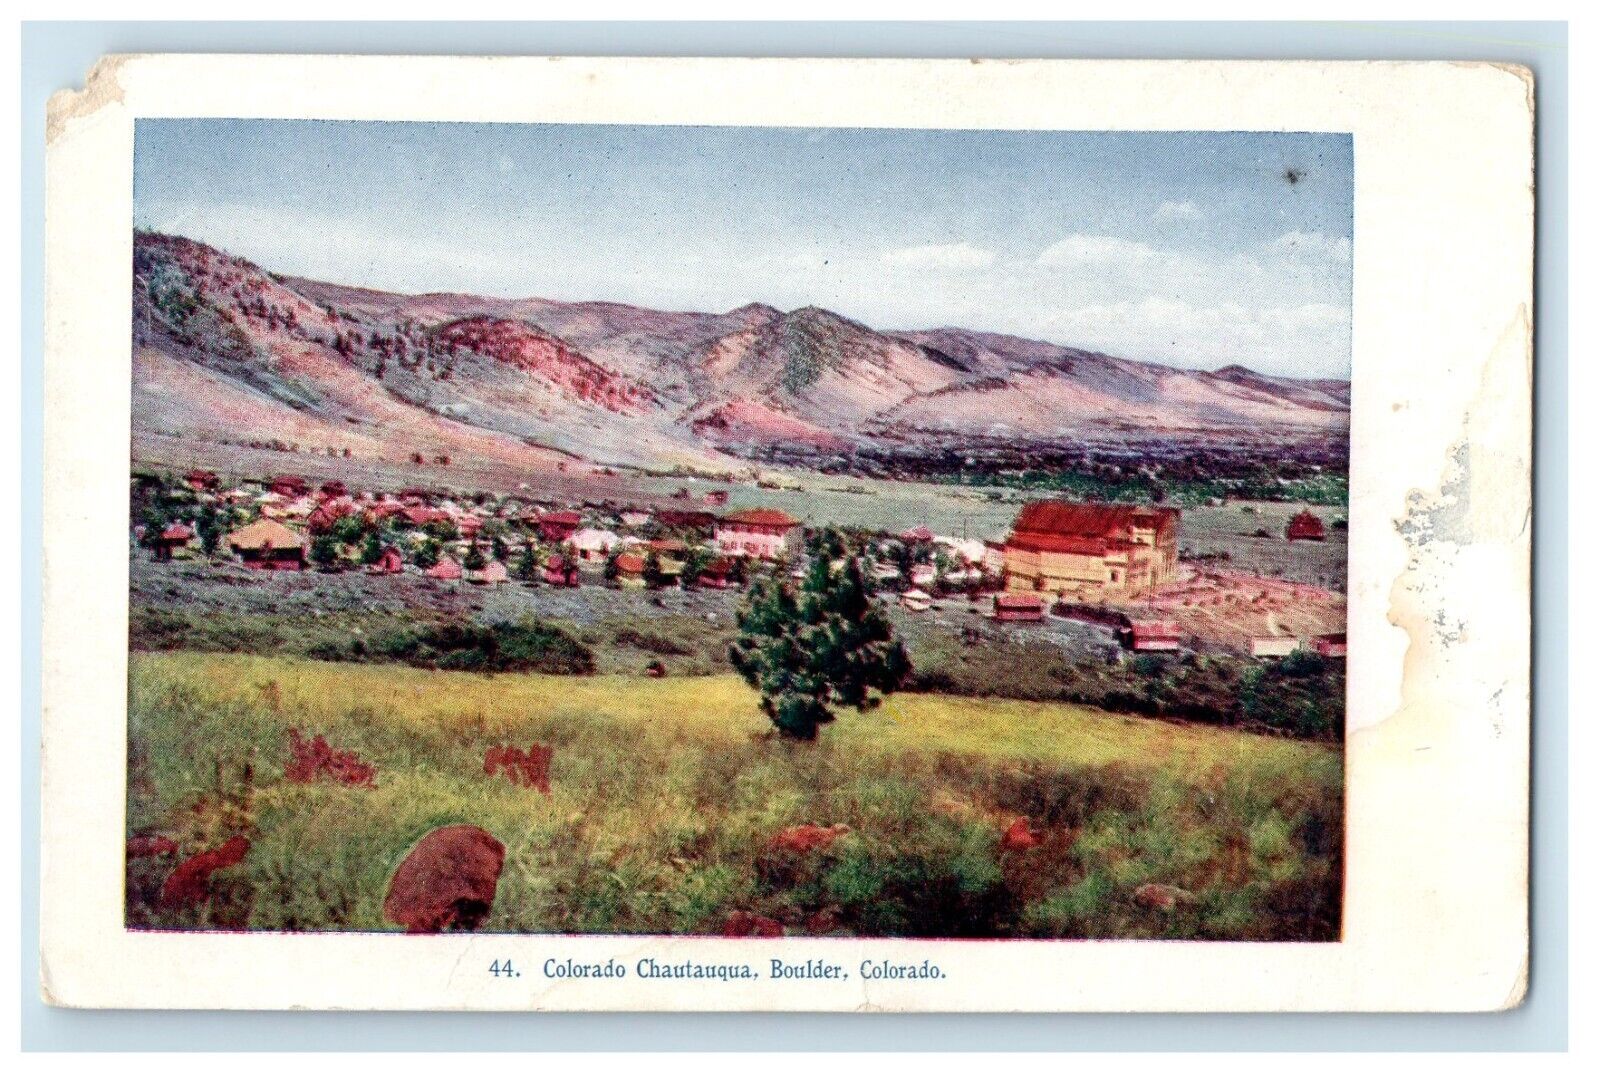 c1905 A View Of Colorado Chautauqua Boulder Colorado CO Antique Postcard